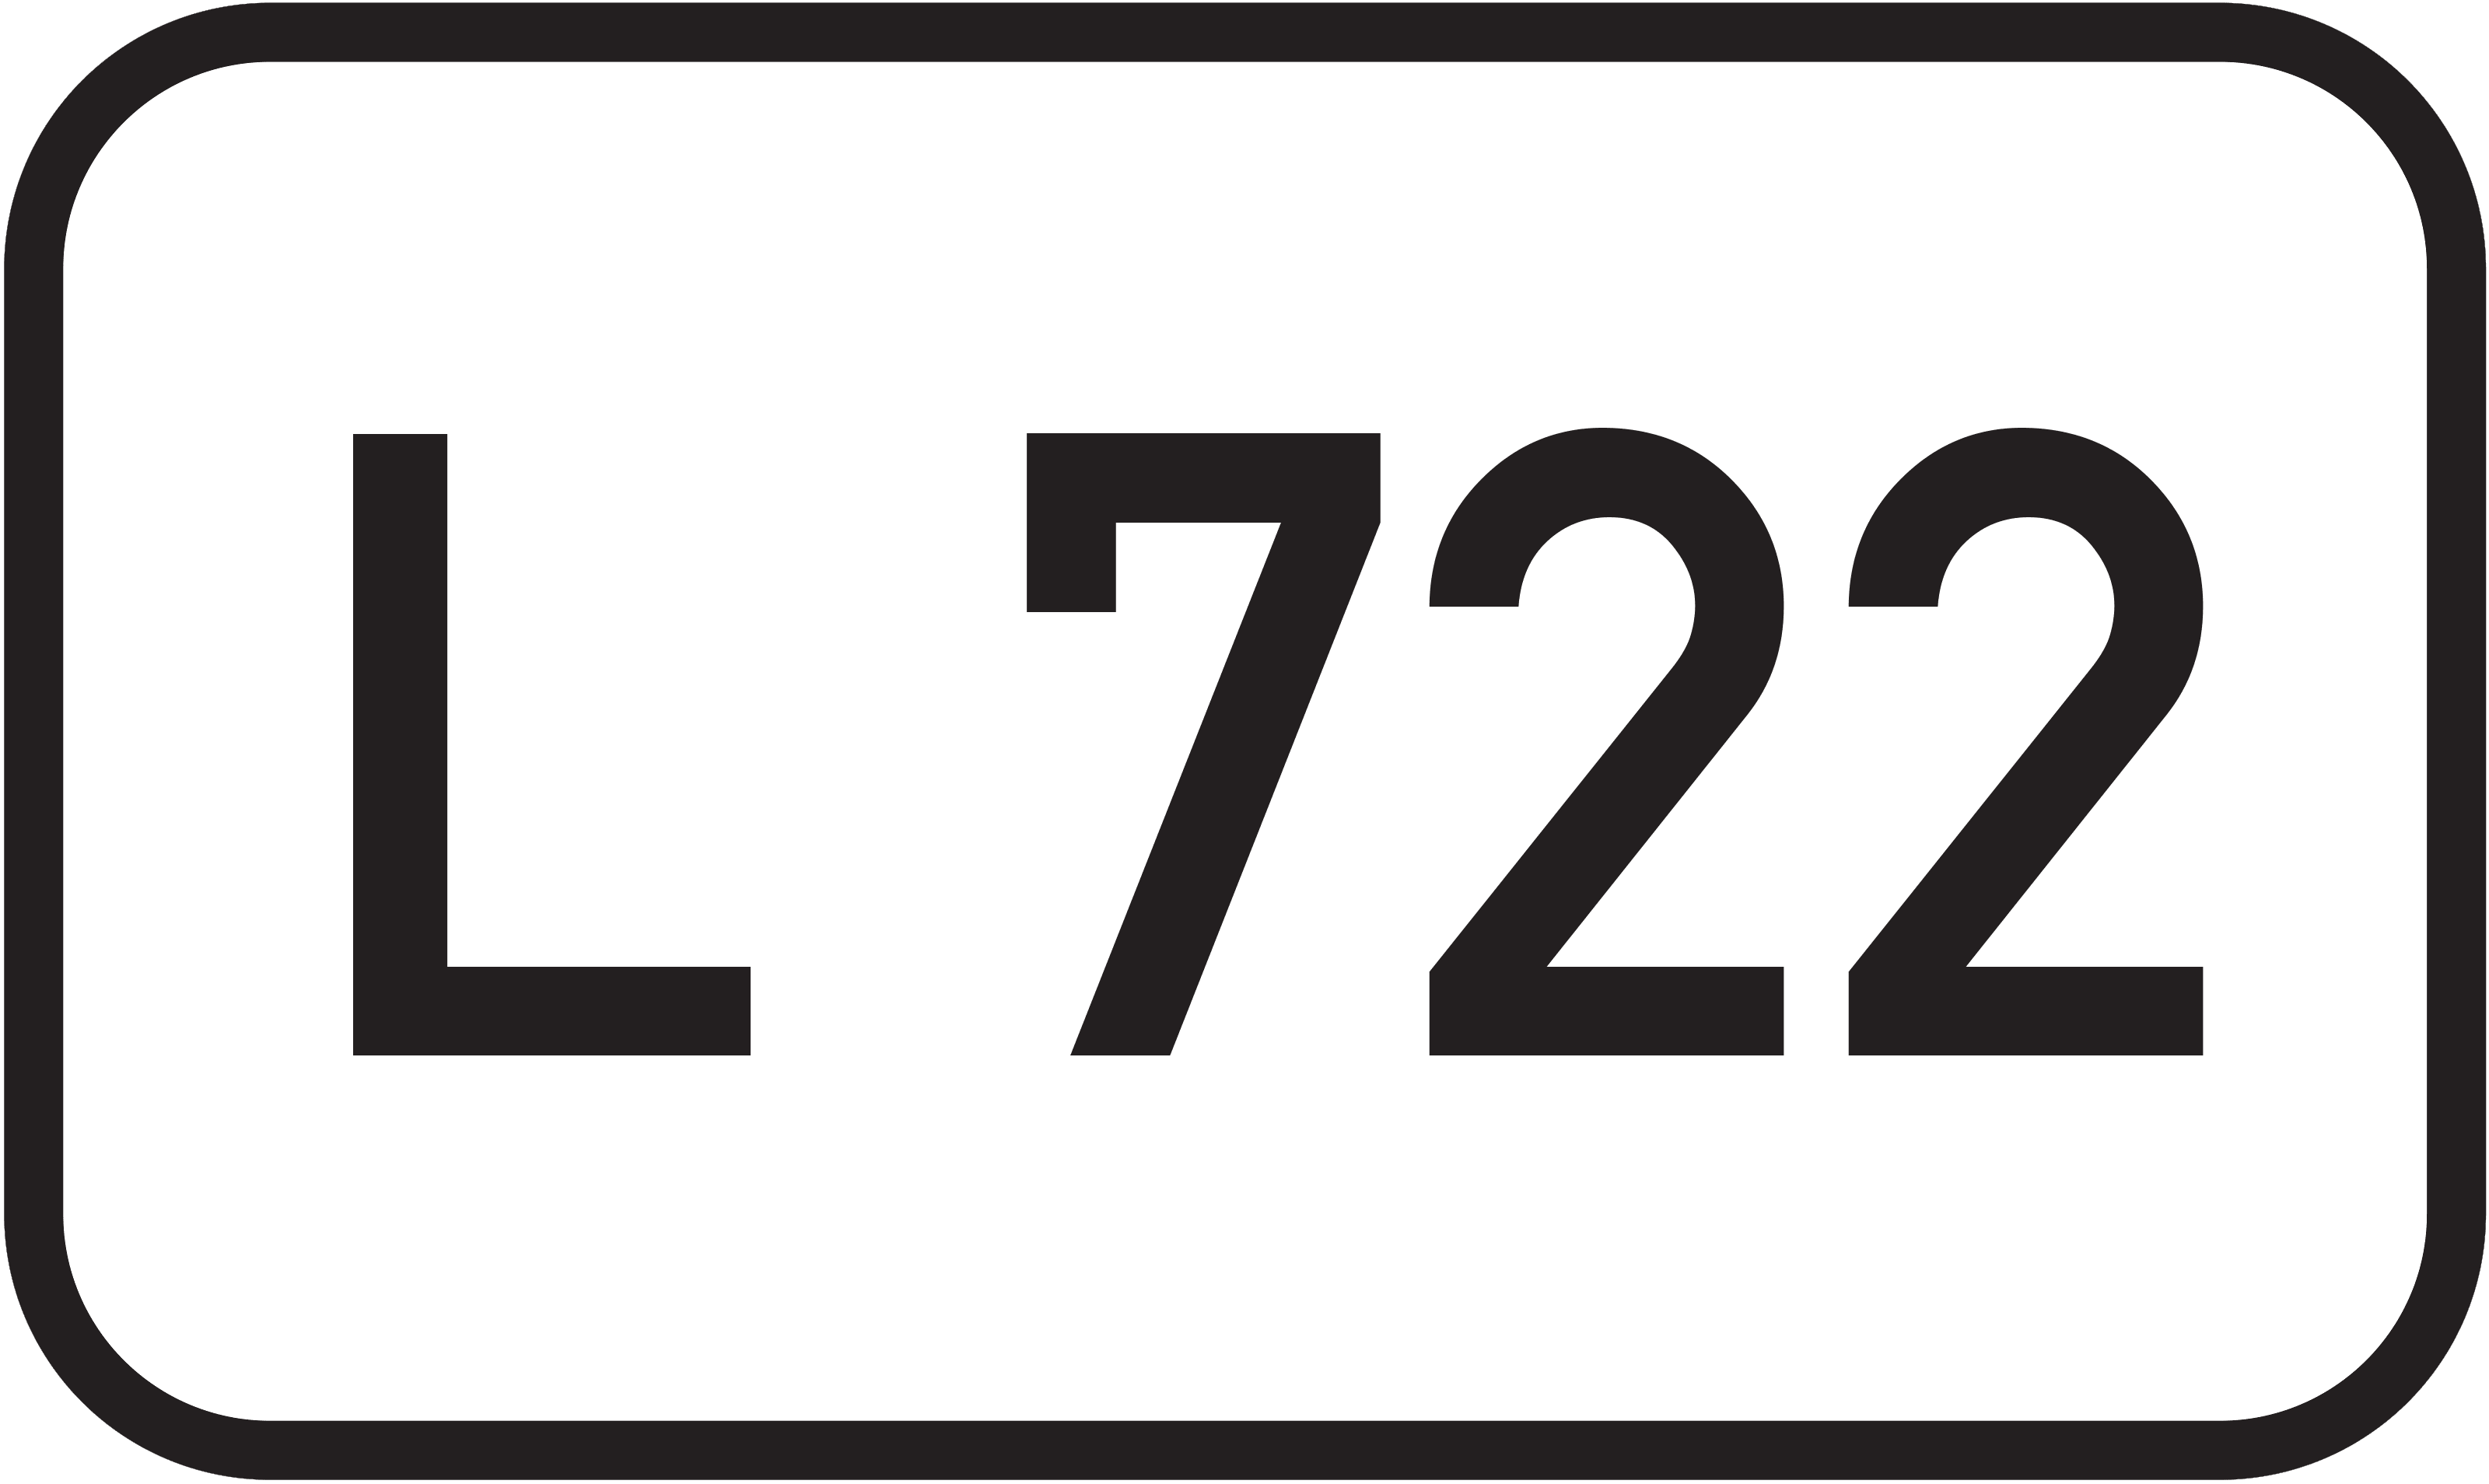 Landesstraße L 722